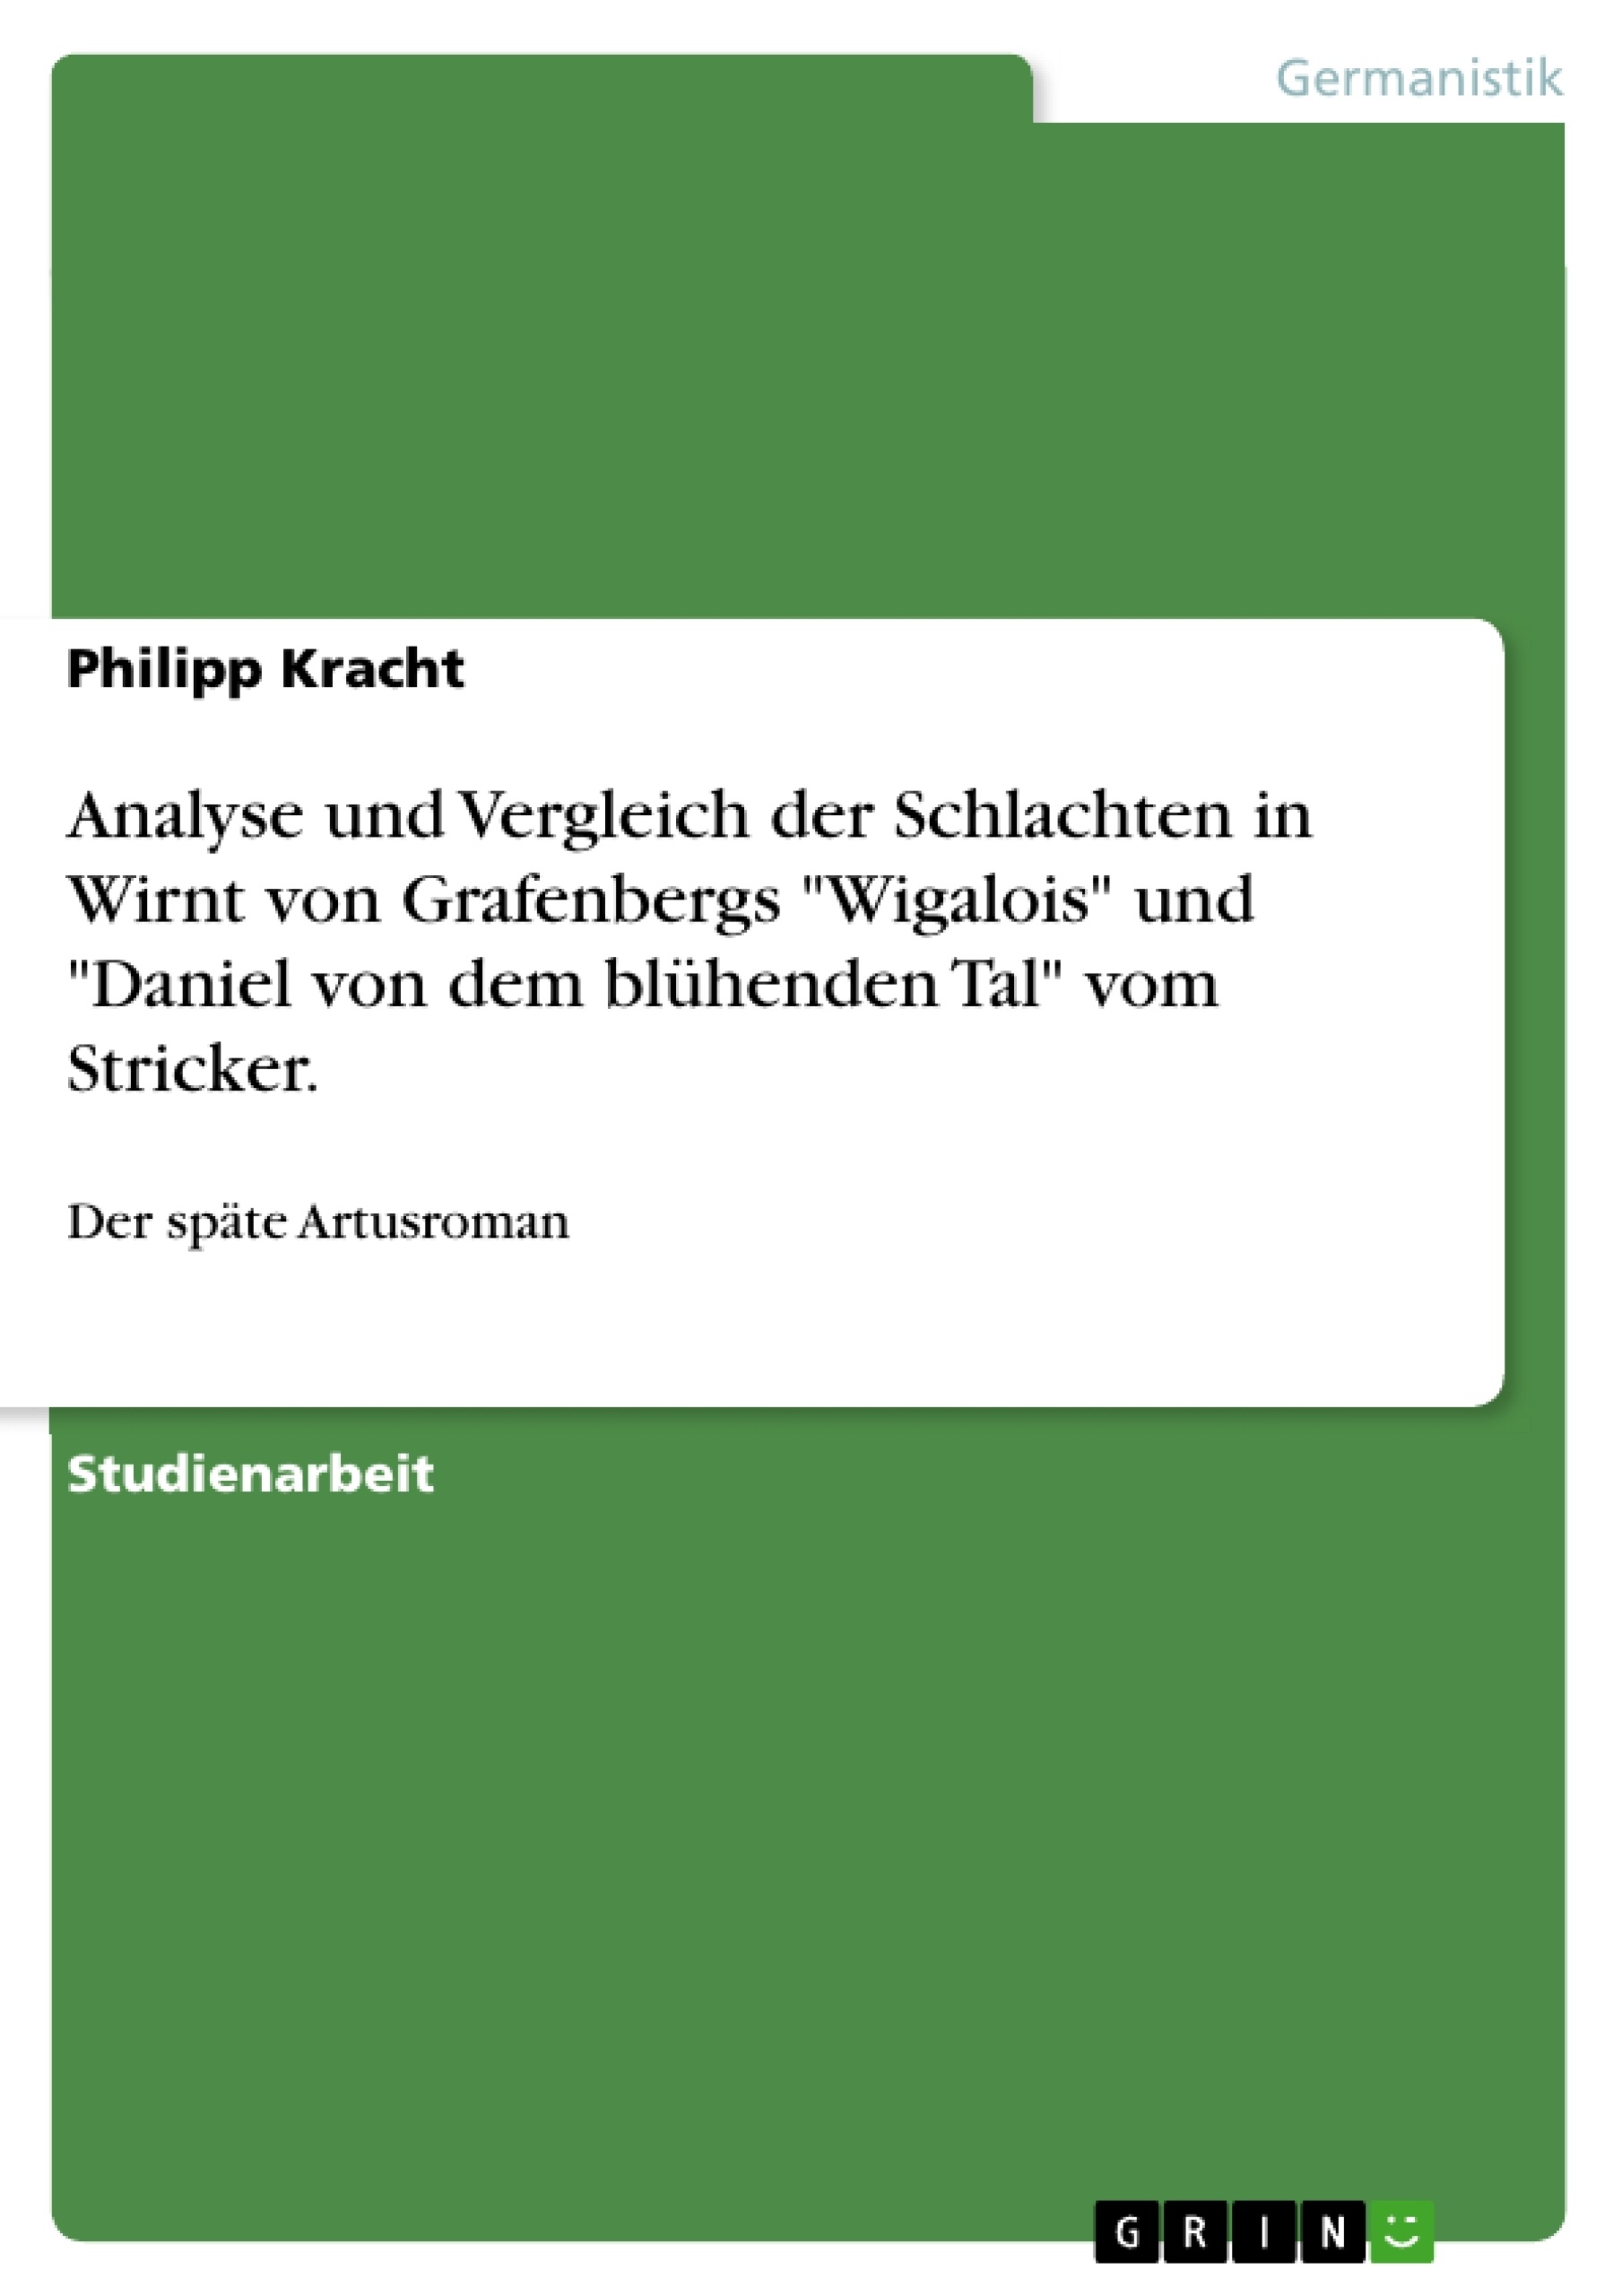 Titre: Analyse und Vergleich der Schlachten in Wirnt von Grafenbergs "Wigalois" und "Daniel von dem blühenden Tal" vom Stricker.